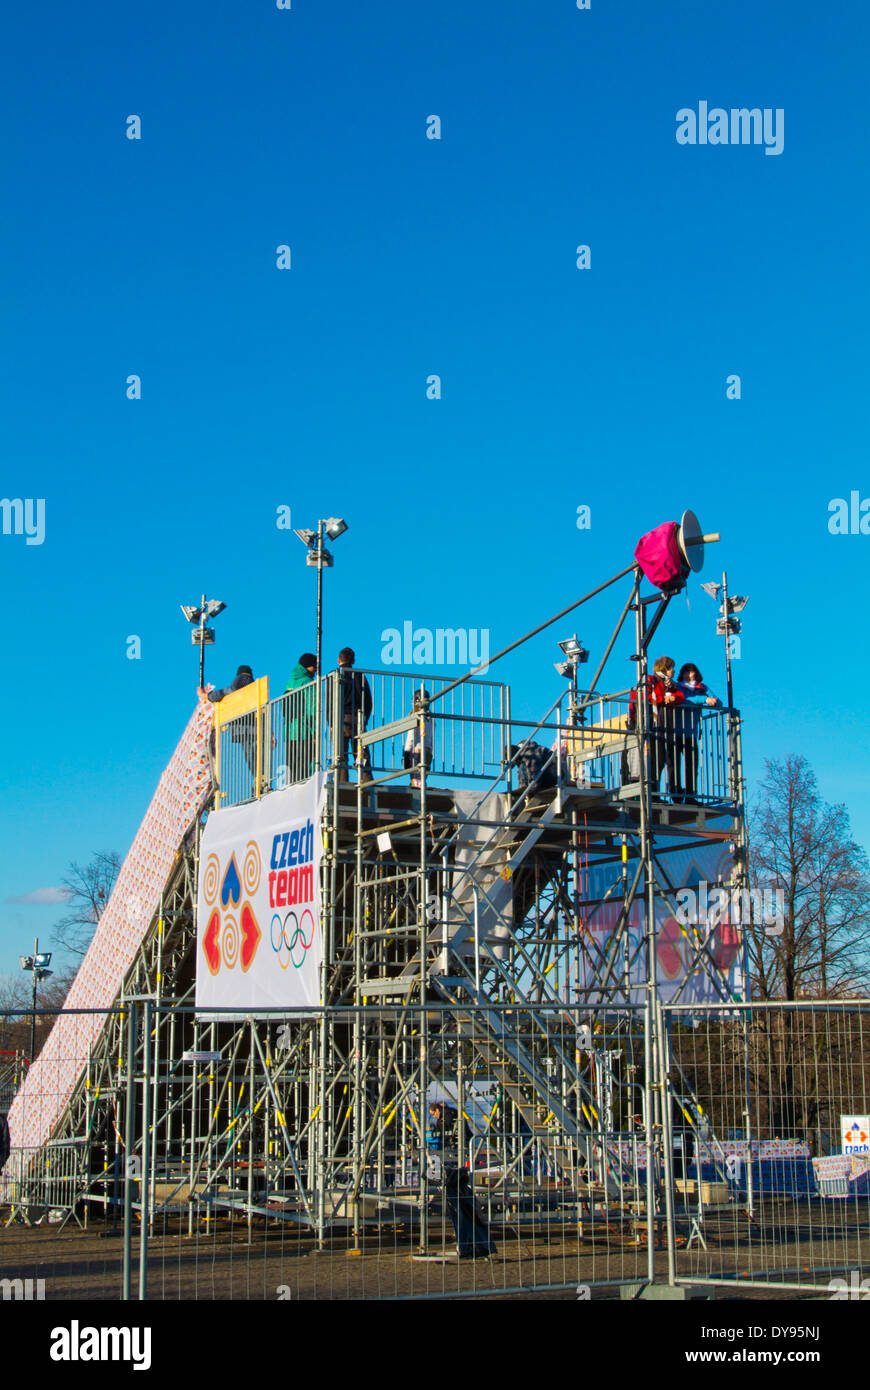 Village olympique, Jeux olympiques d'hiver de 2014 à Sotchi, Letenske sady parc à thème parc, Prague, République Tchèque, Europe Banque D'Images